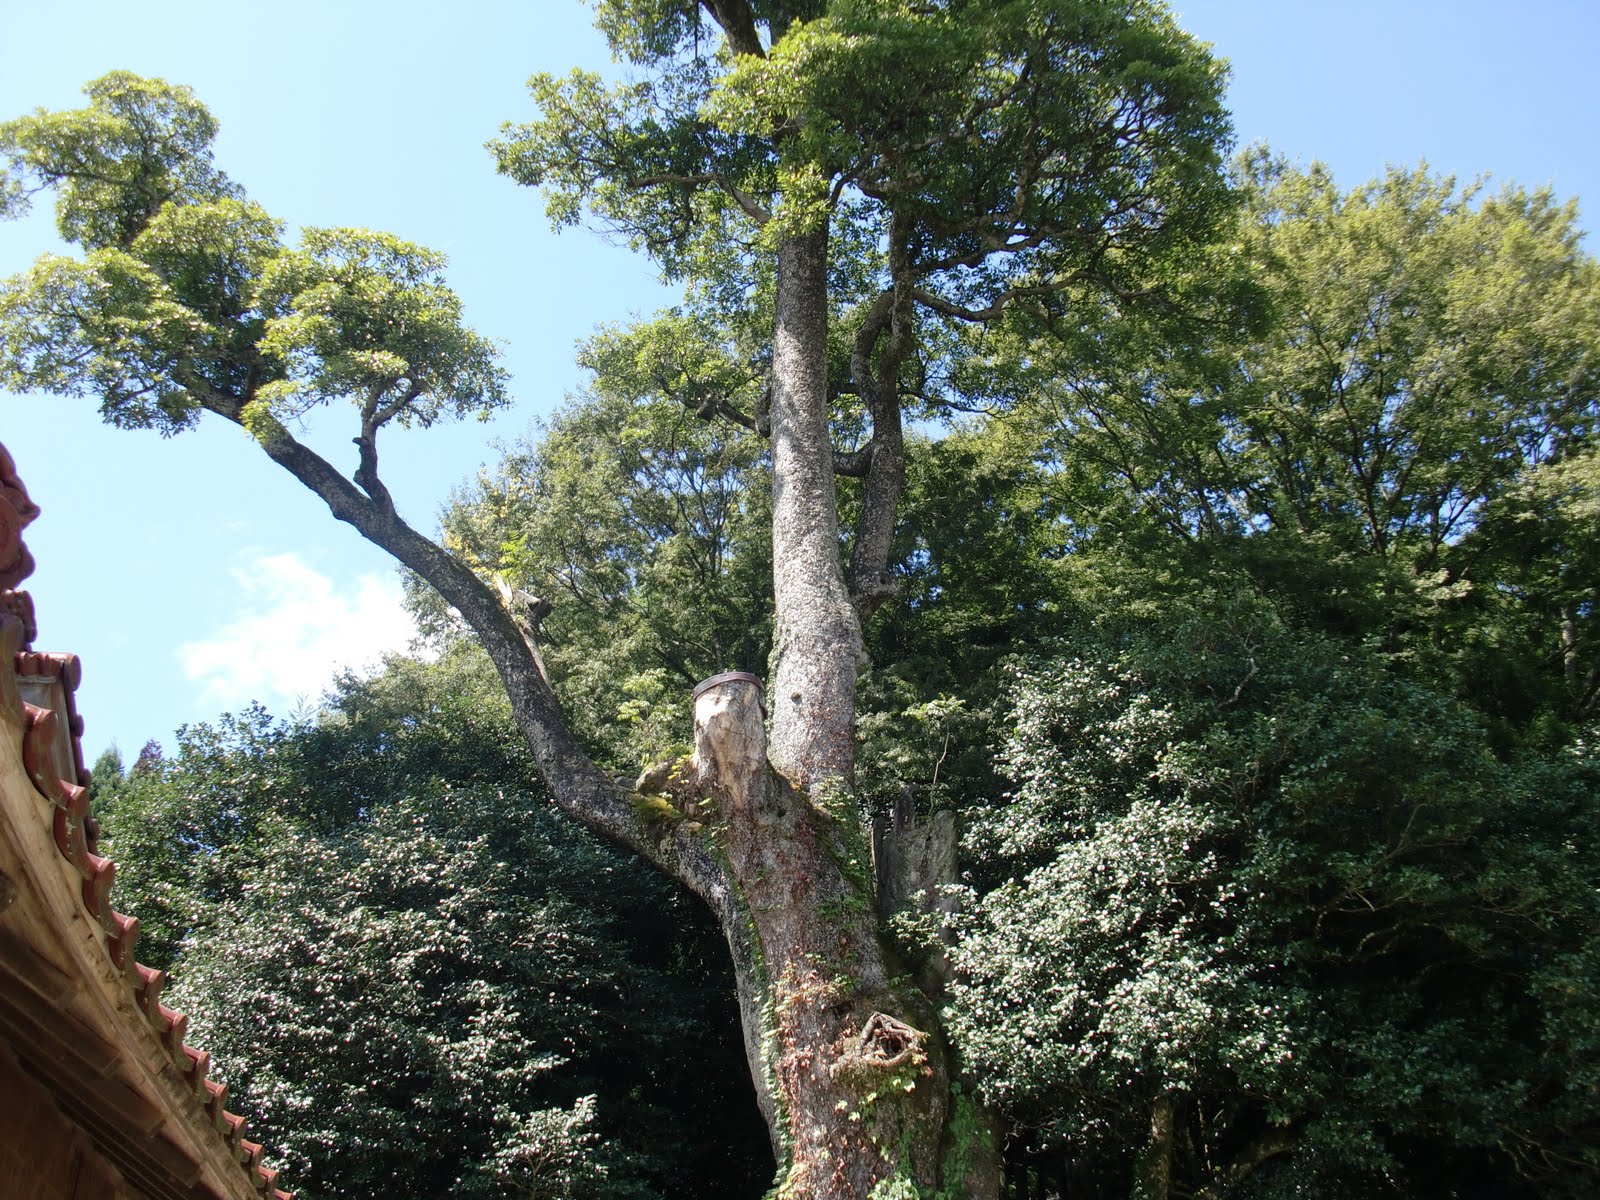 躍動と安らぎの里づくり鍋山 高龗神社のタブの木を訪ねました